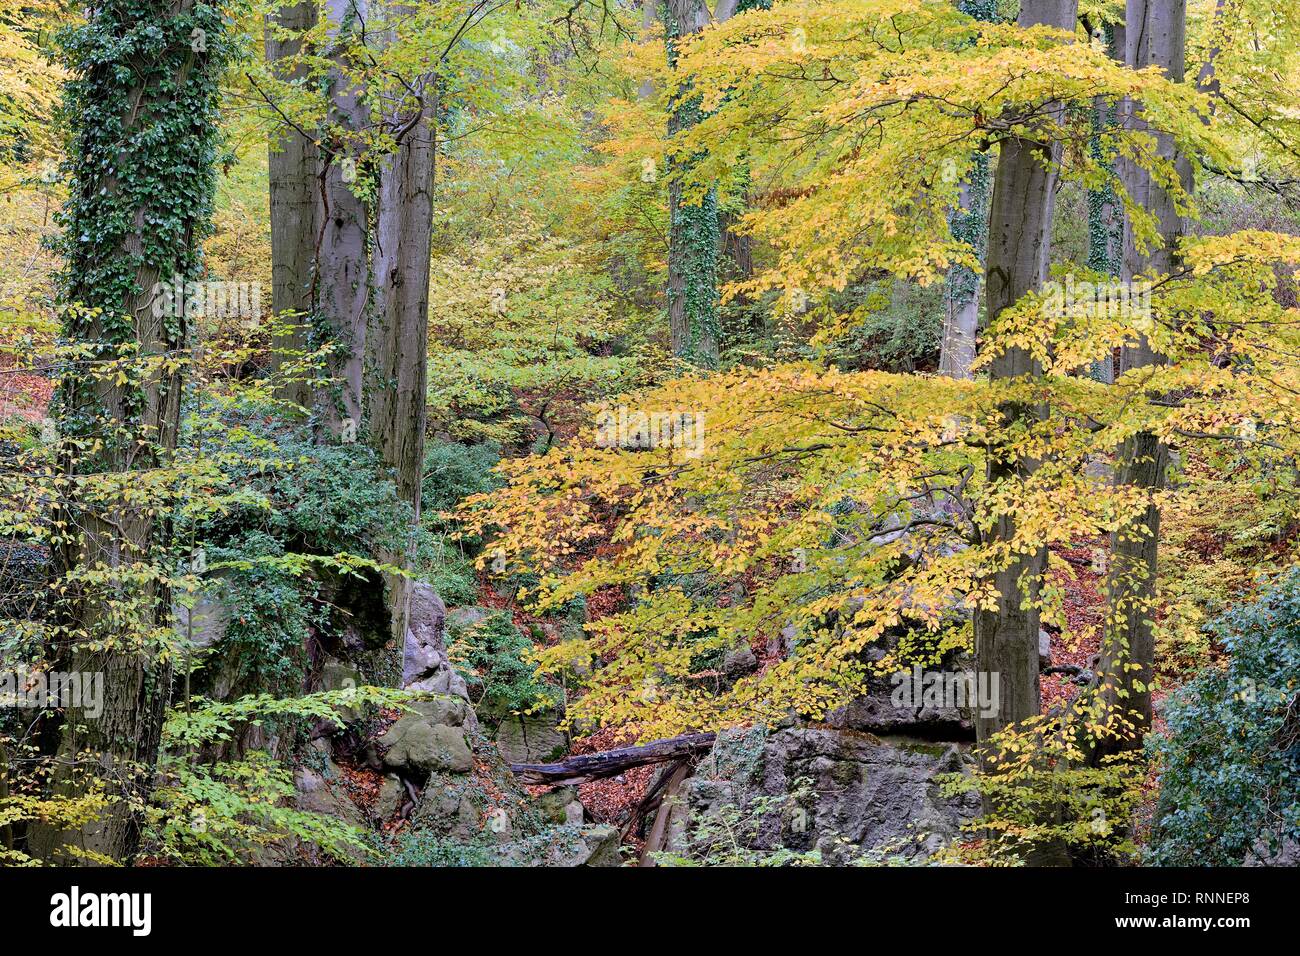 Le hêtre commun (Fagus sylvatica) de lierre (Hedera helix) liées à la rude paysage rocheux, la forêt de feuillus à l'automne Banque D'Images